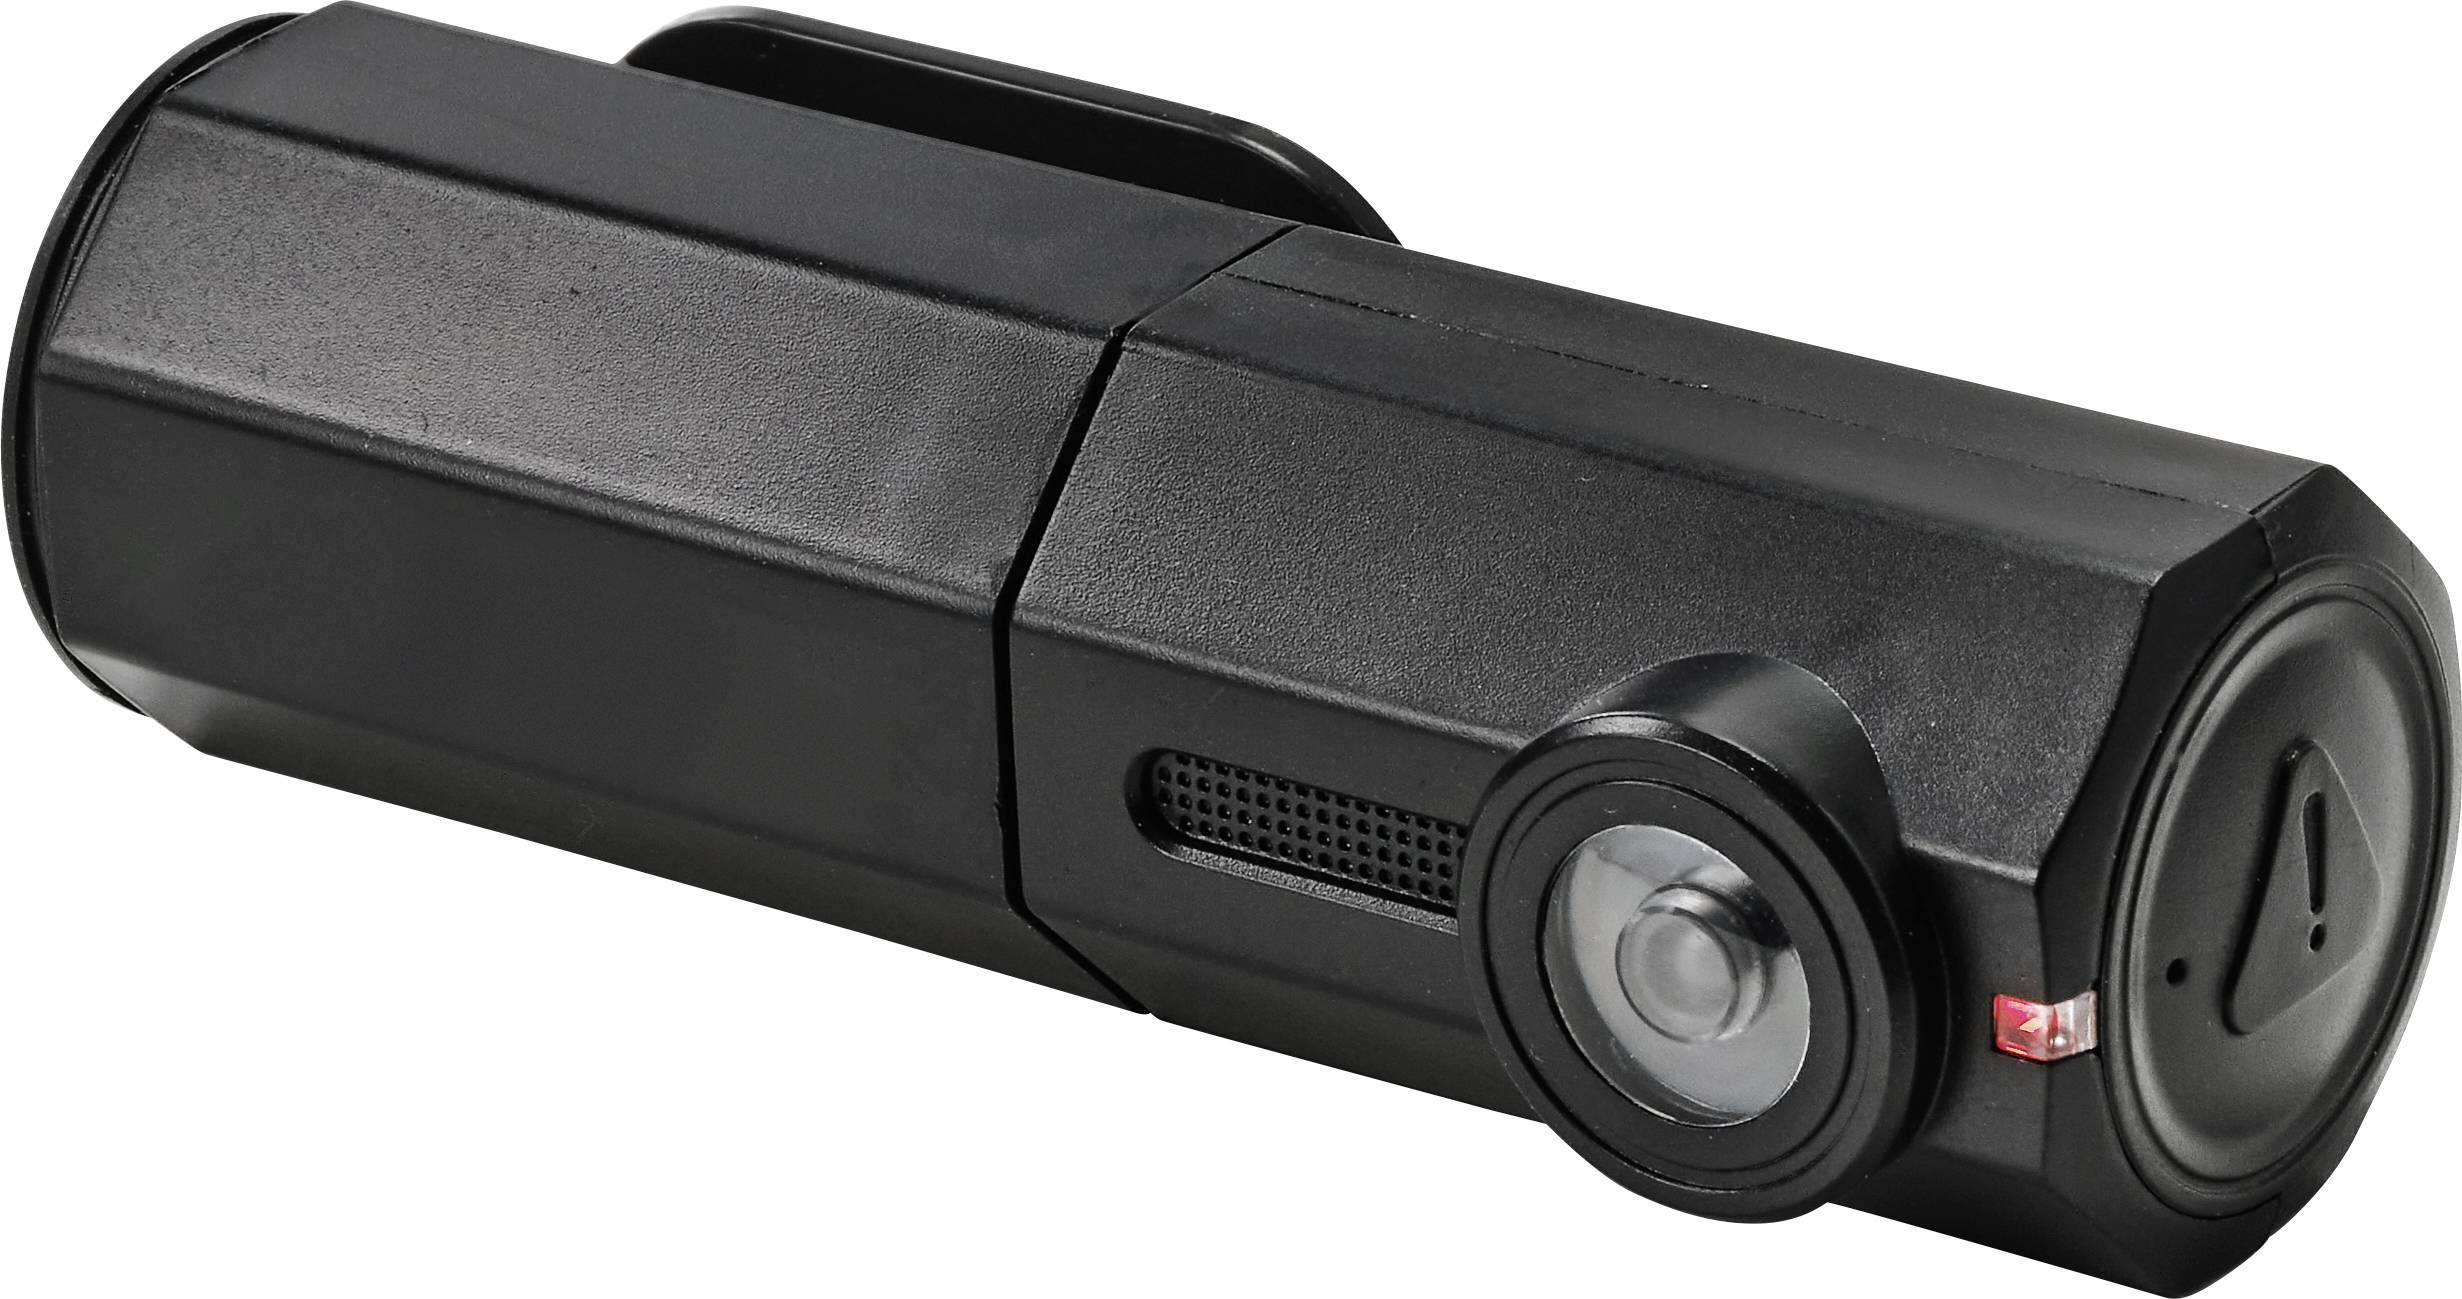 Zabezpečení proti odcizení Basetech Kamera-Attrape, integrovaná LED svítilna (bliká), 3 V